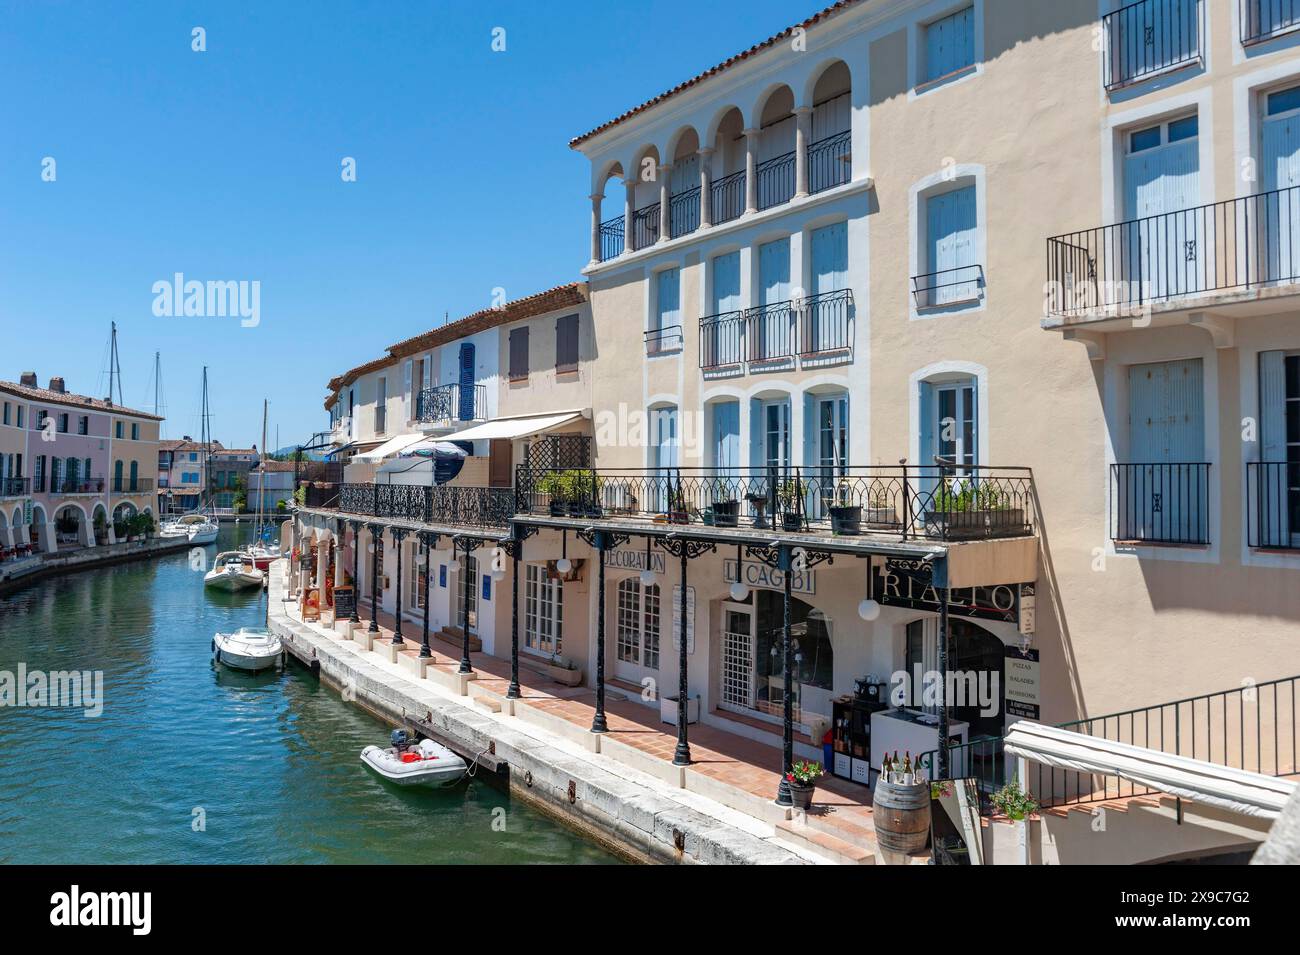 Paesaggio urbano con ristoranti e negozi al Pont Principal du Port grimaud, Port Grimaud, Var, Provence-Alpes-Cote d'Azur, Francia Foto Stock